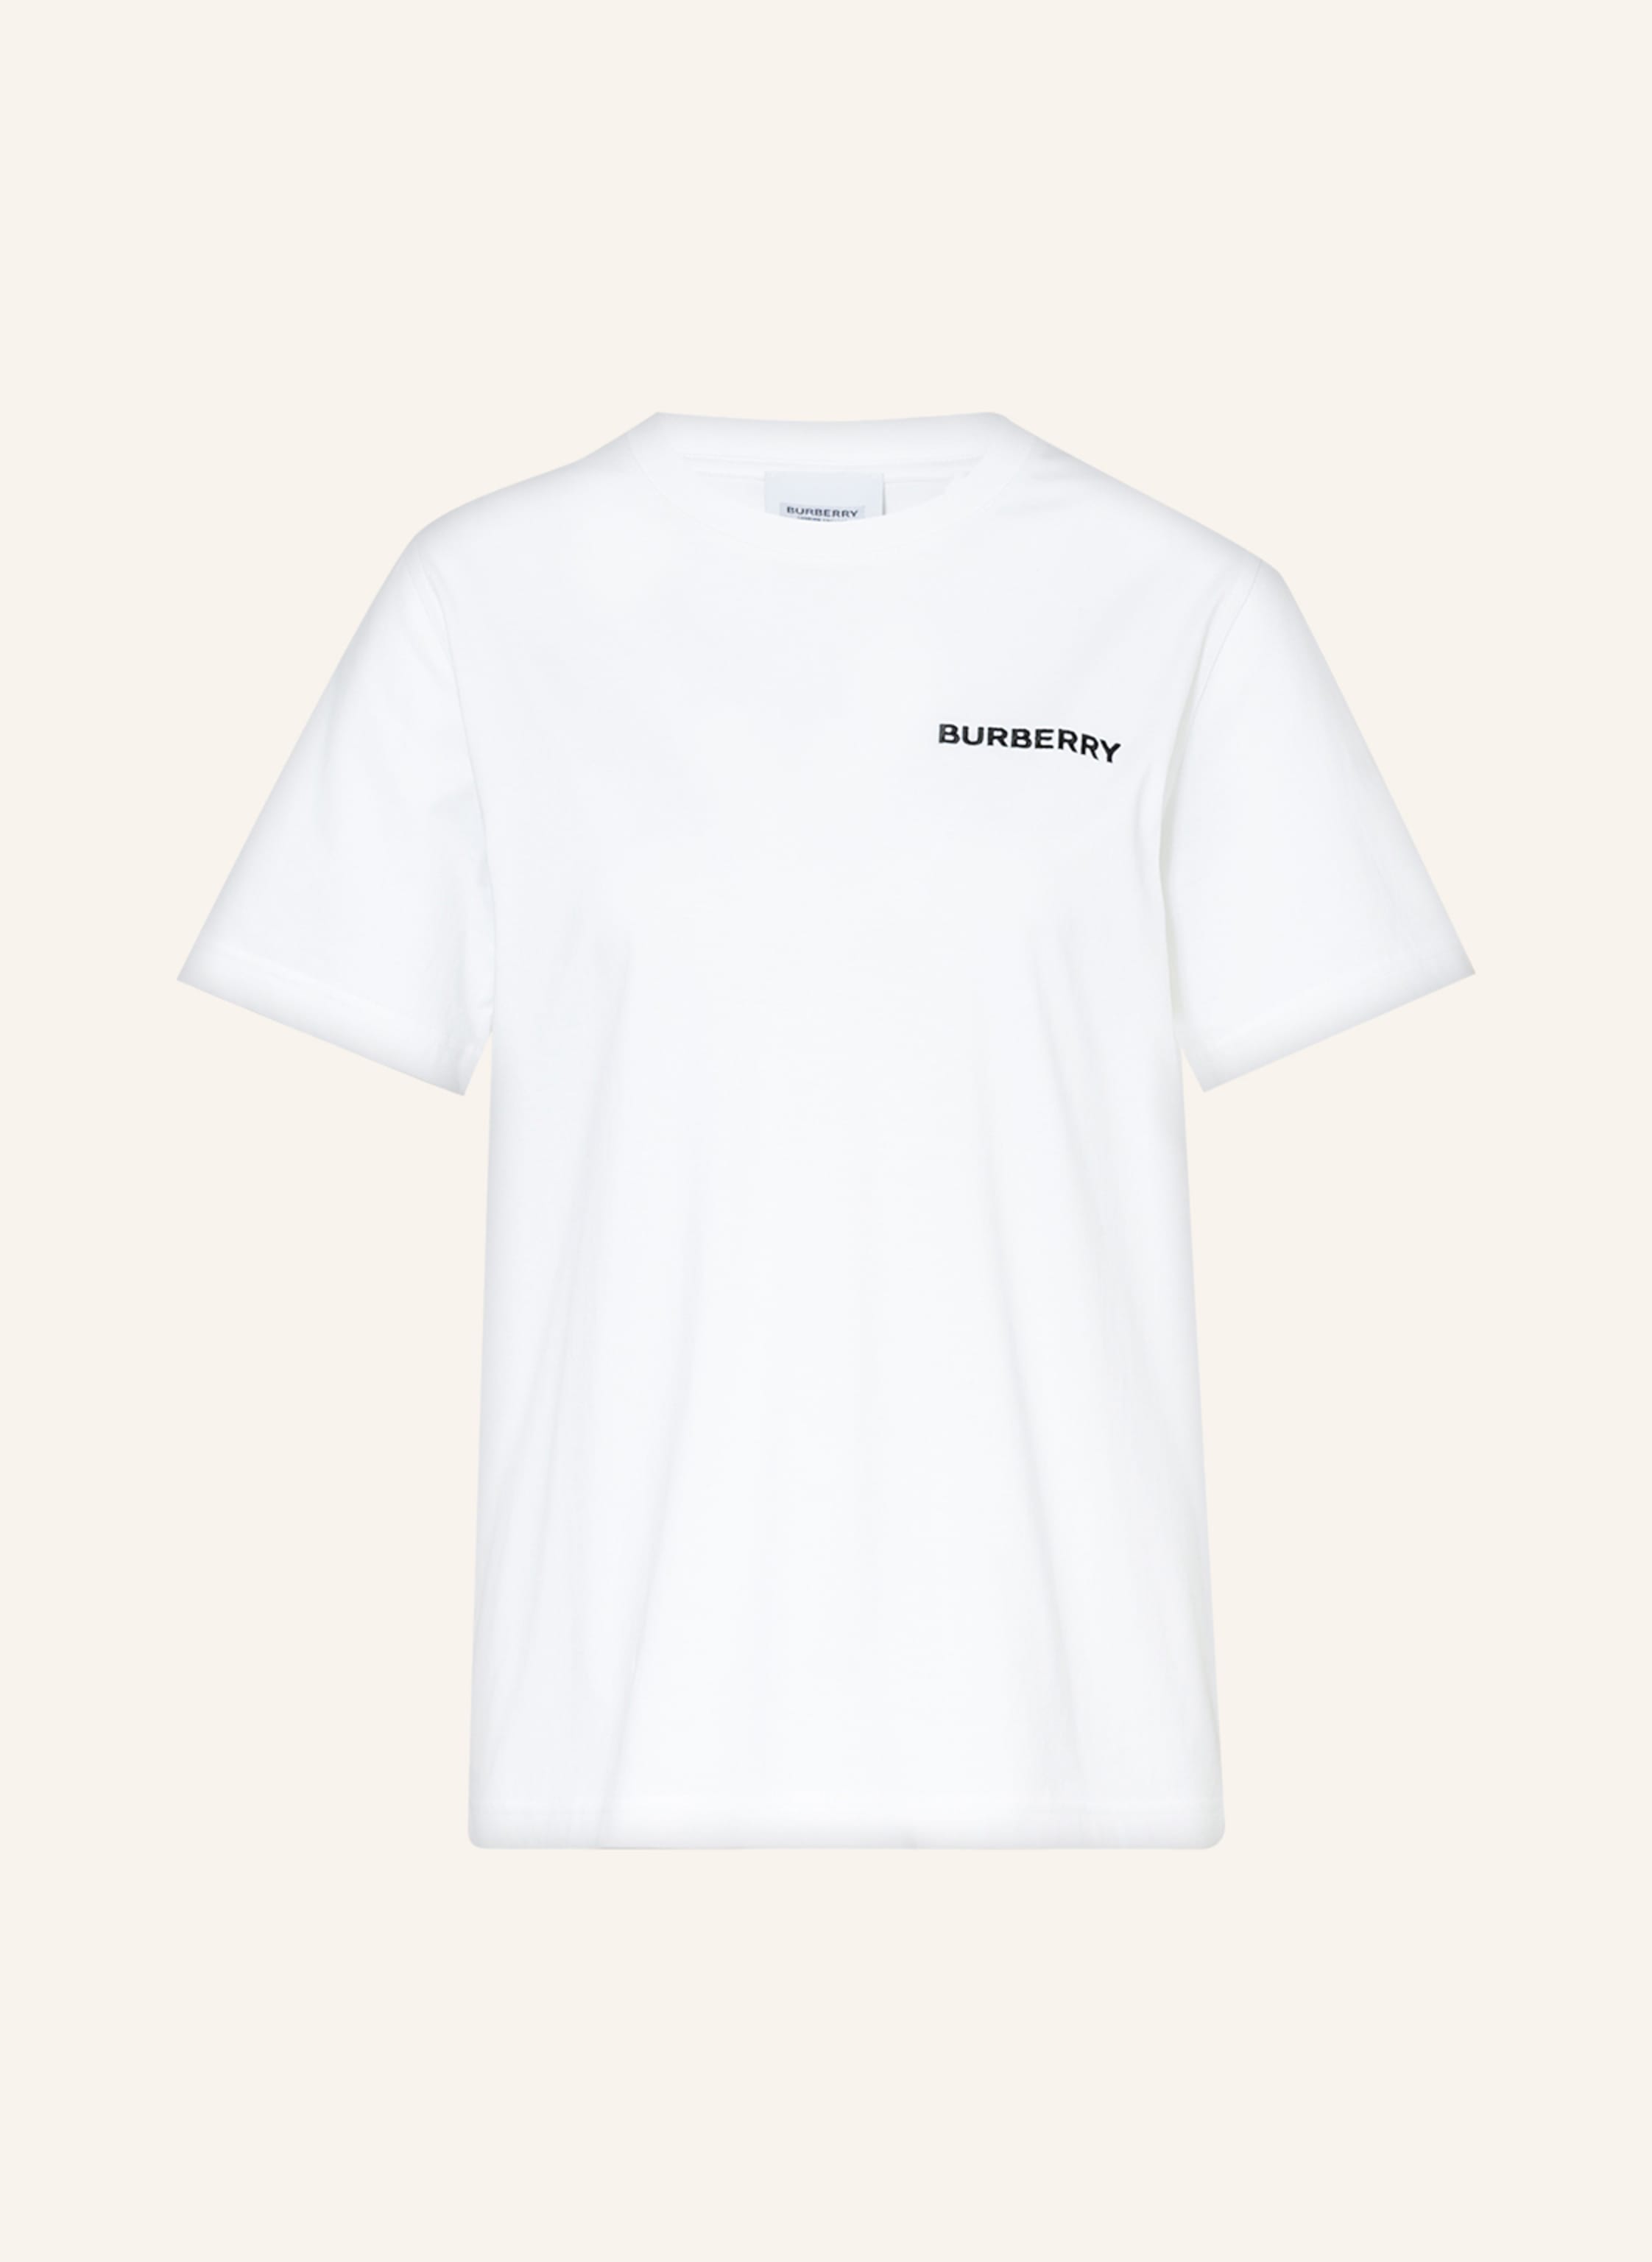 BURBERRY T-shirt CARRICK in white | Breuninger